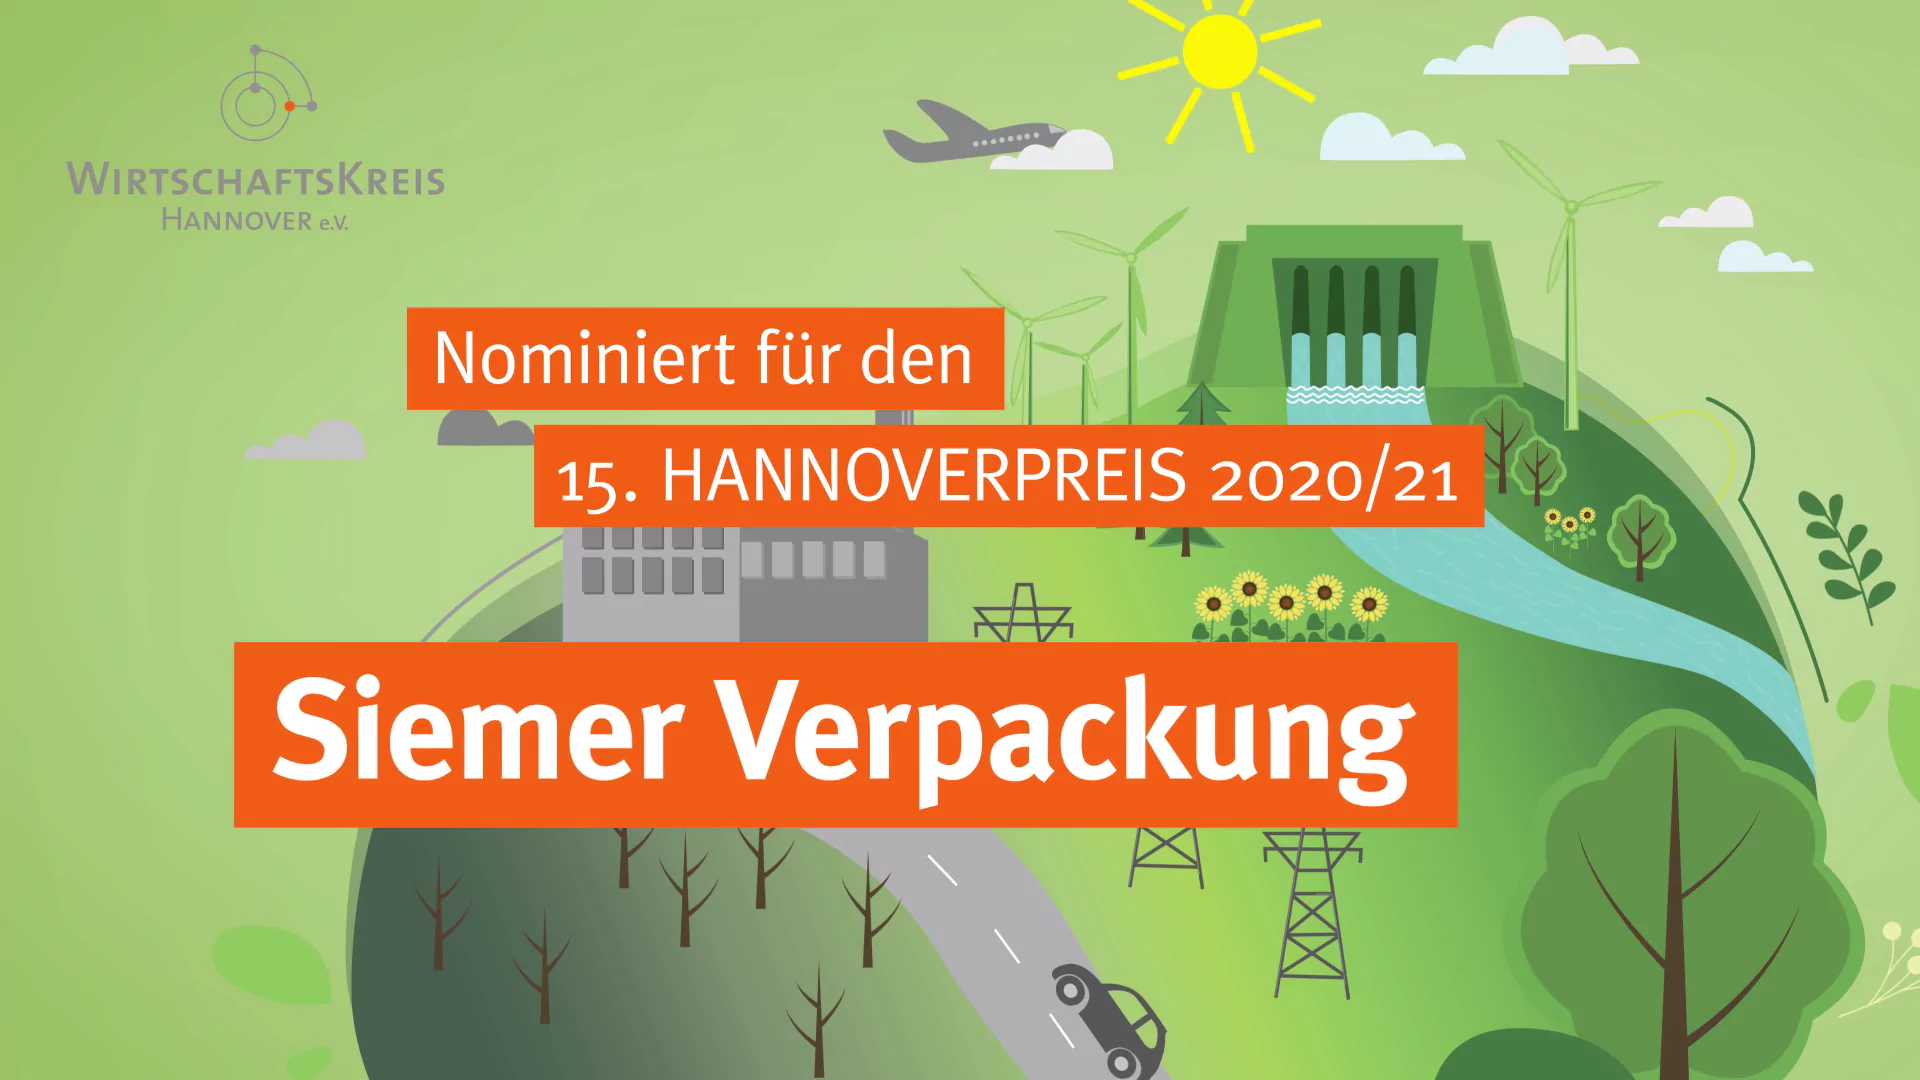 Best Company Video Gmbh Hannoverpreis 2021 Siemer Verpackung